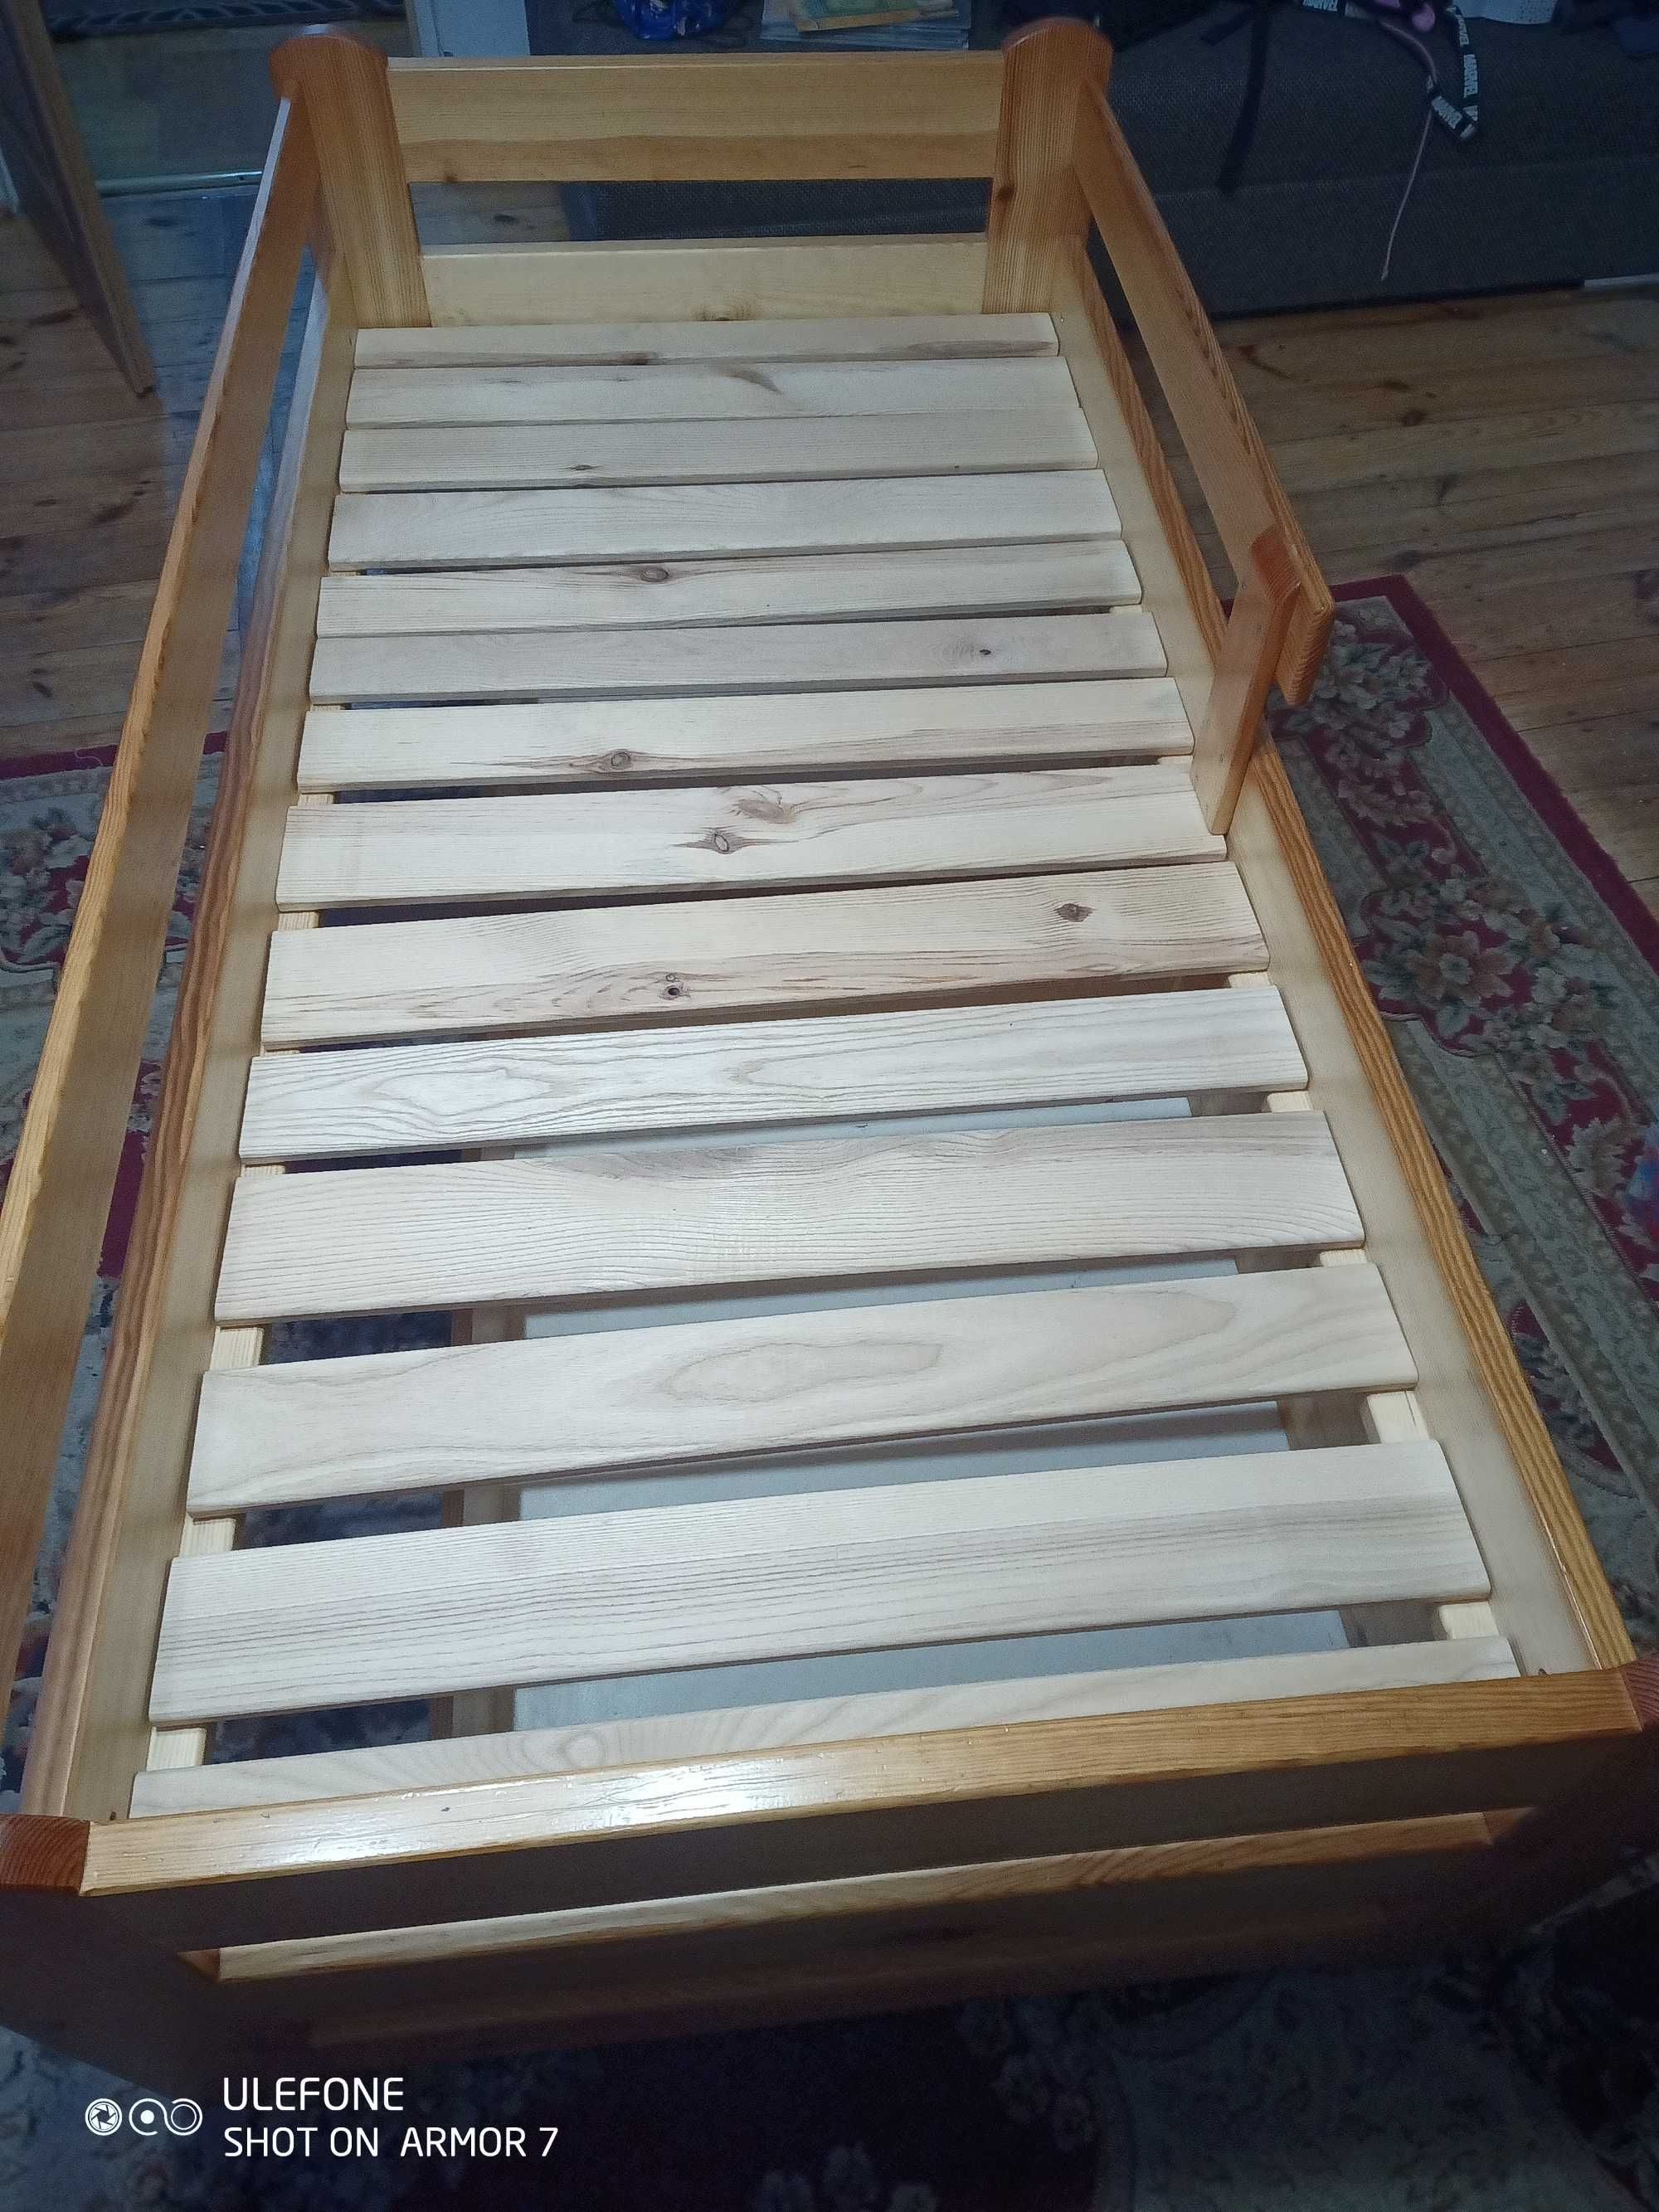 Łóżko drewniane z szufladami